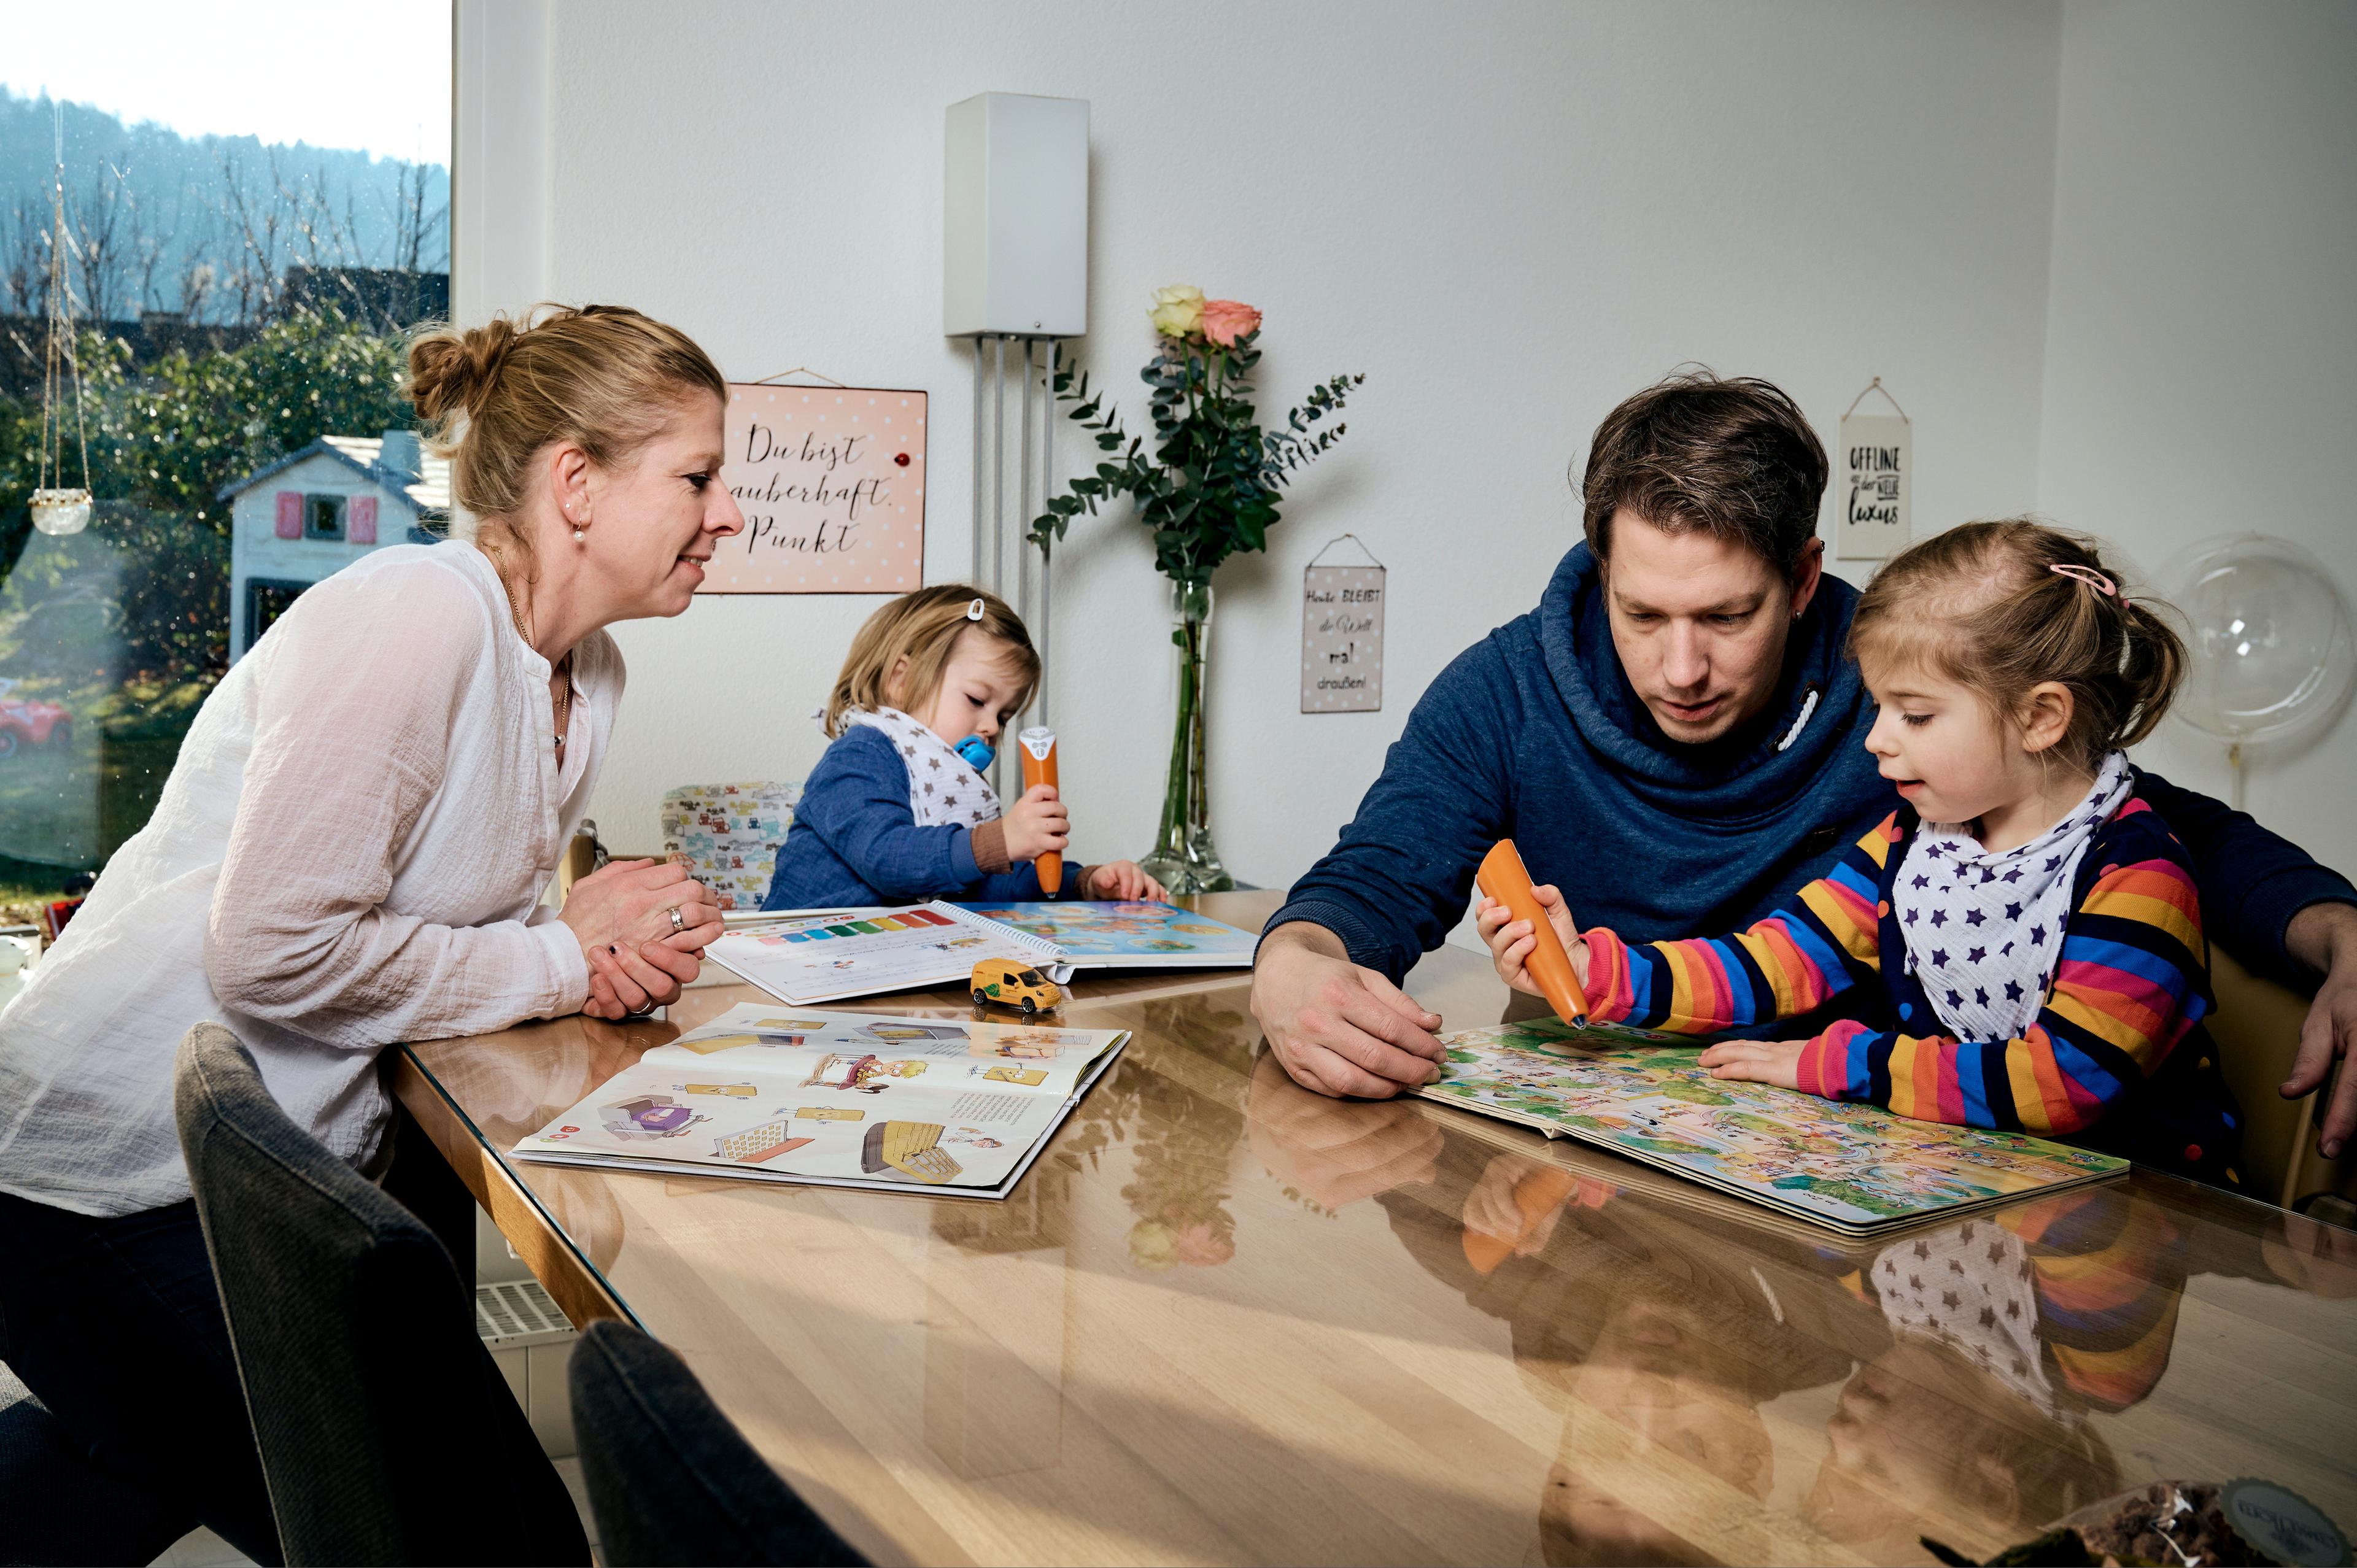 Il padre e la madre siedono a tavola con i due bambini (femmina e maschio) e giocano.